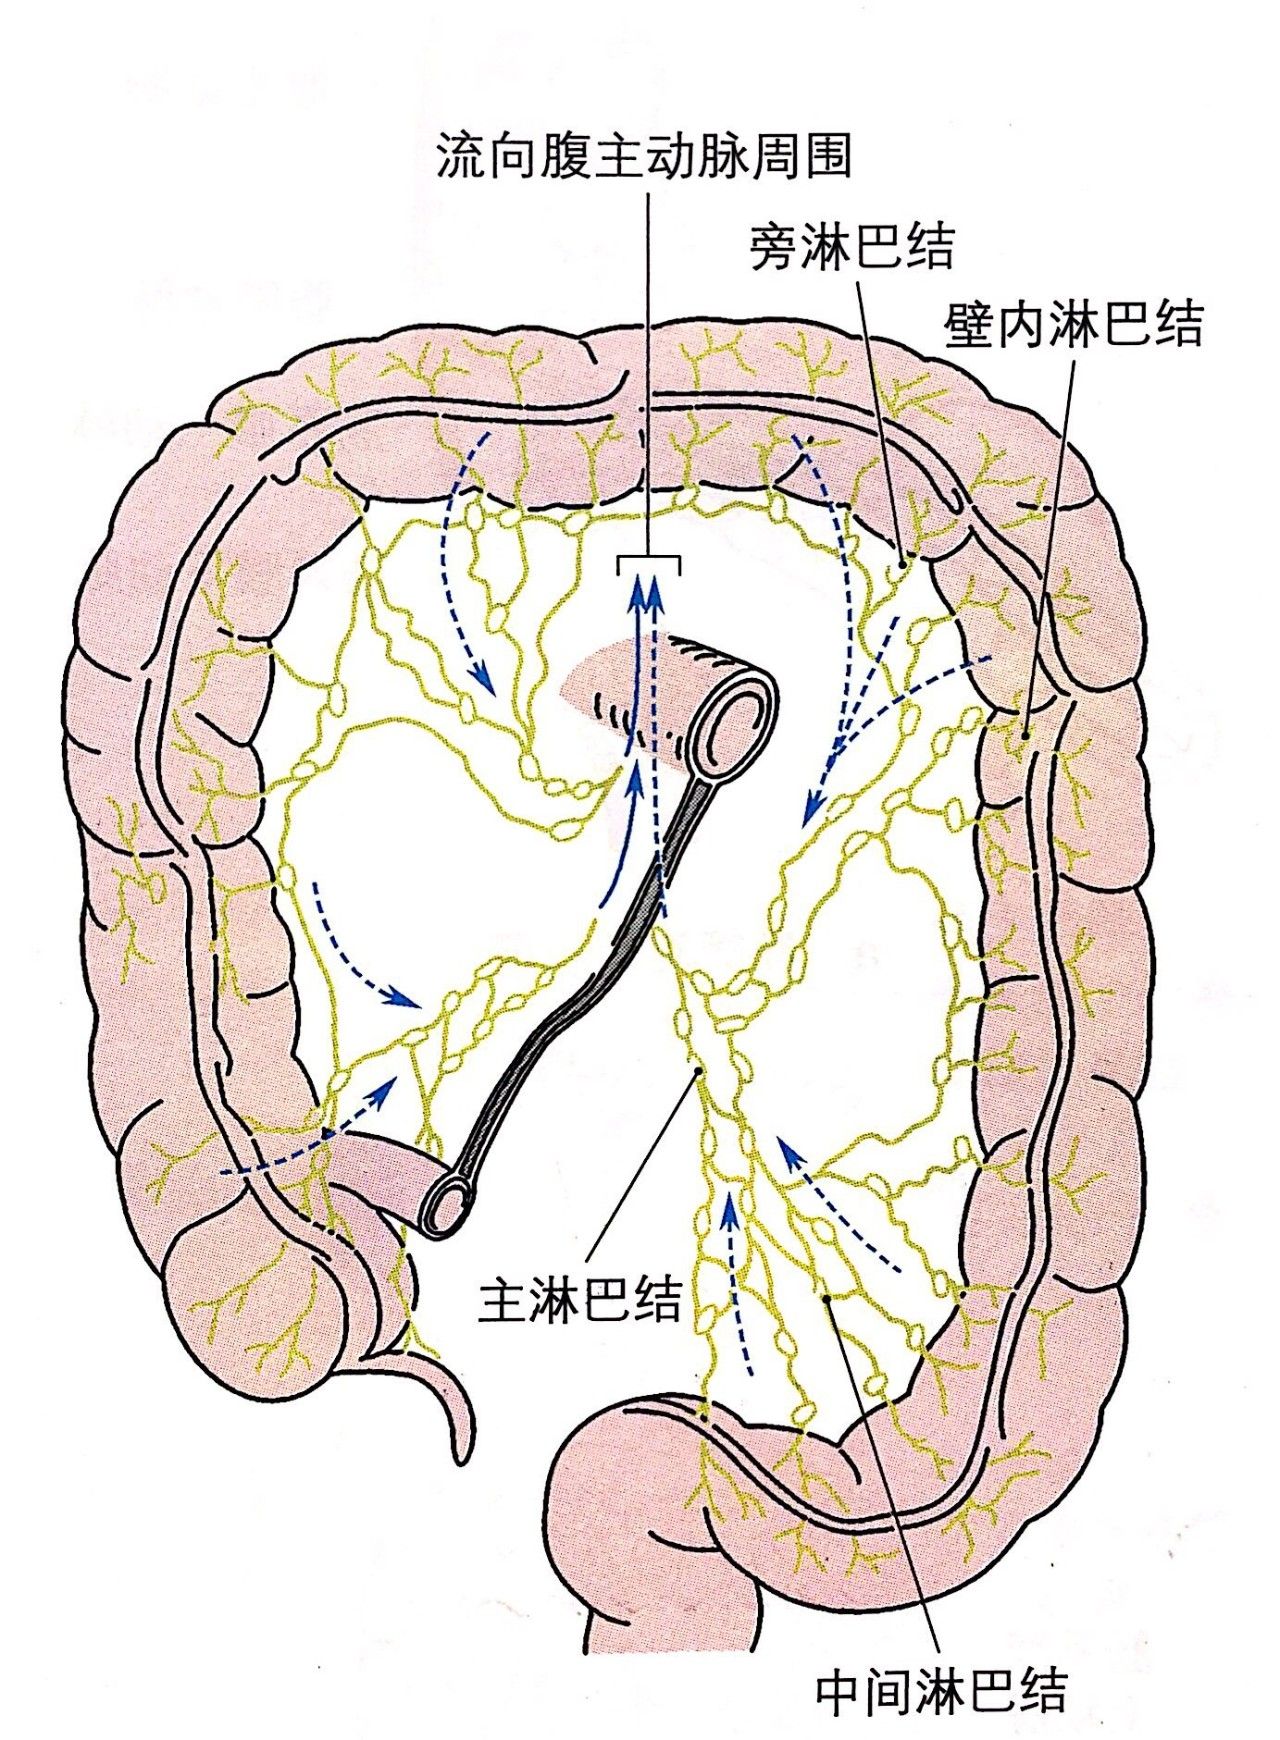 腹腔结构分布示意图-图库-五毛网